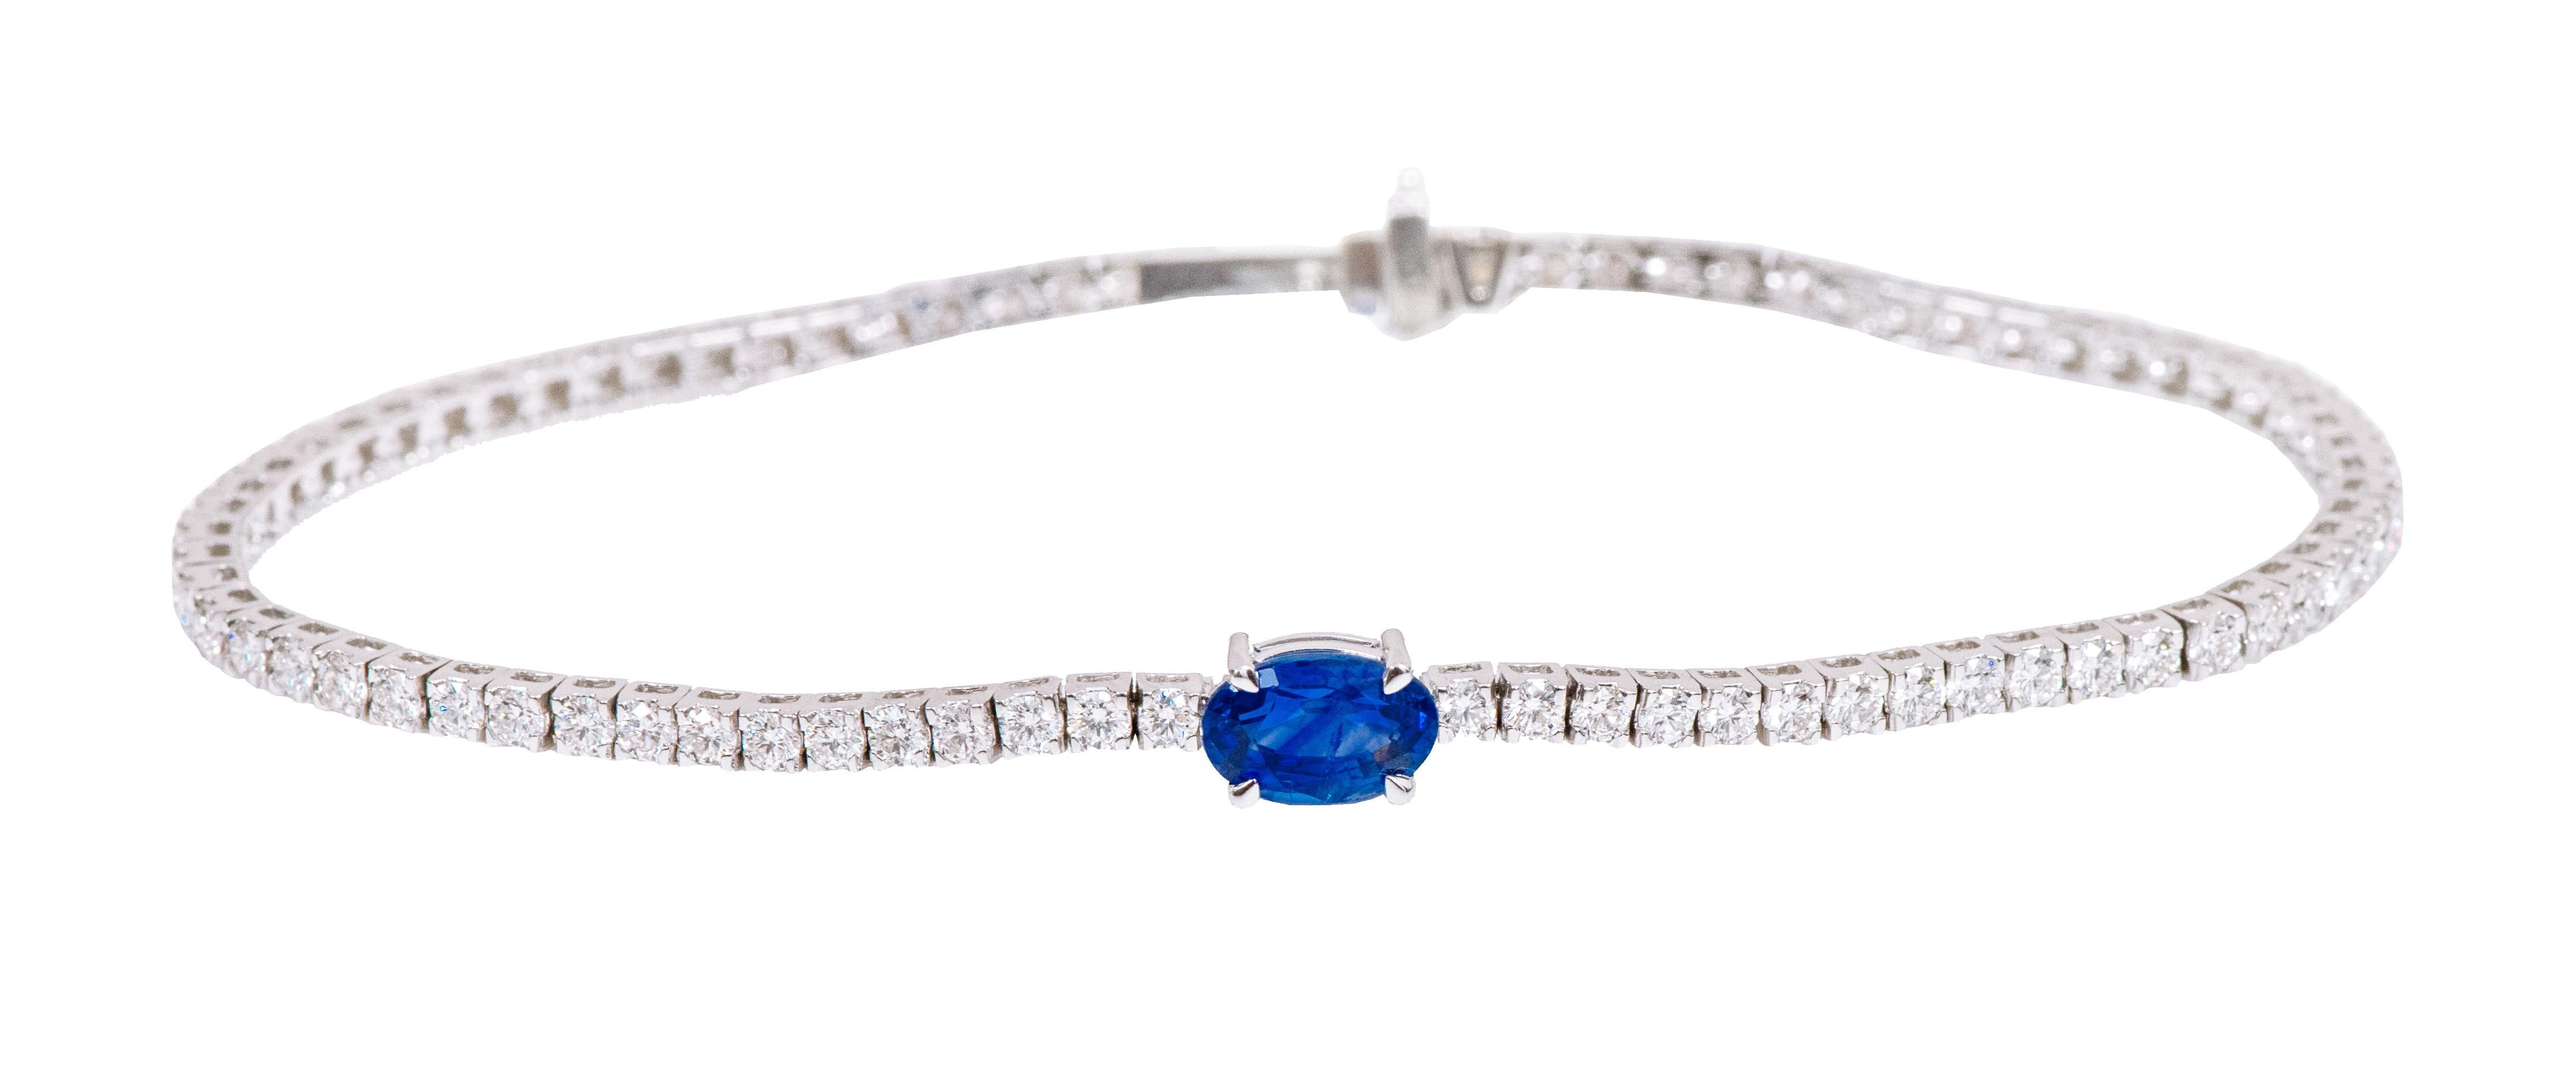 Bracelet tennis en or 18 carats avec saphir bleu solitaire de 3,65 carats et diamants